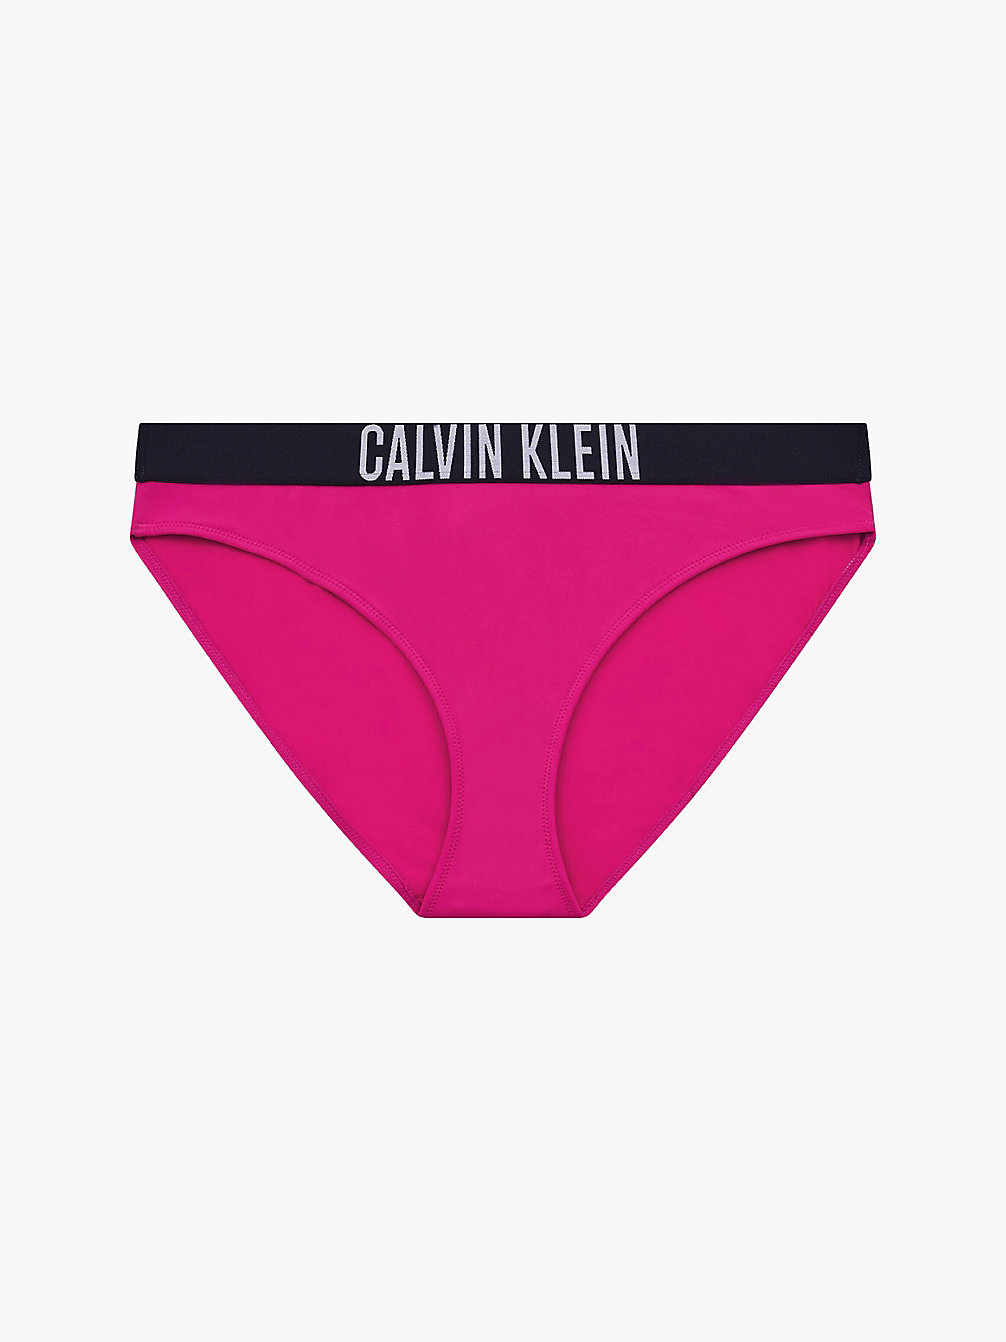 ROYAL PINK Klassische Bikinihose - Intense Power undefined Damen Calvin Klein